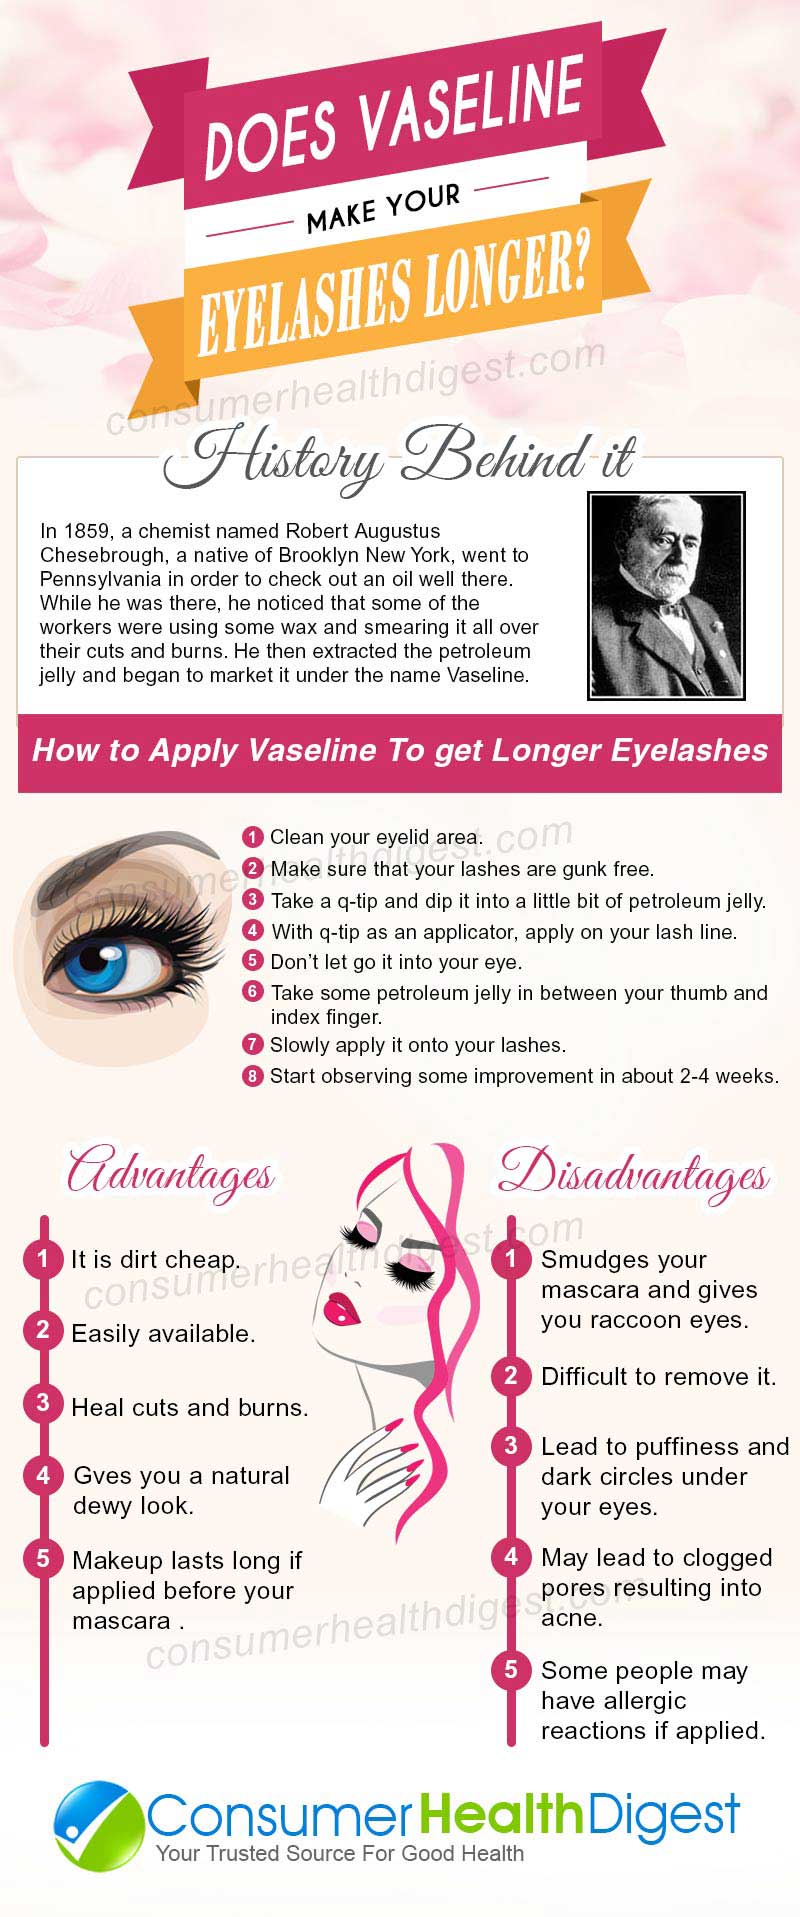 does vaseline make your eyelashes longer?